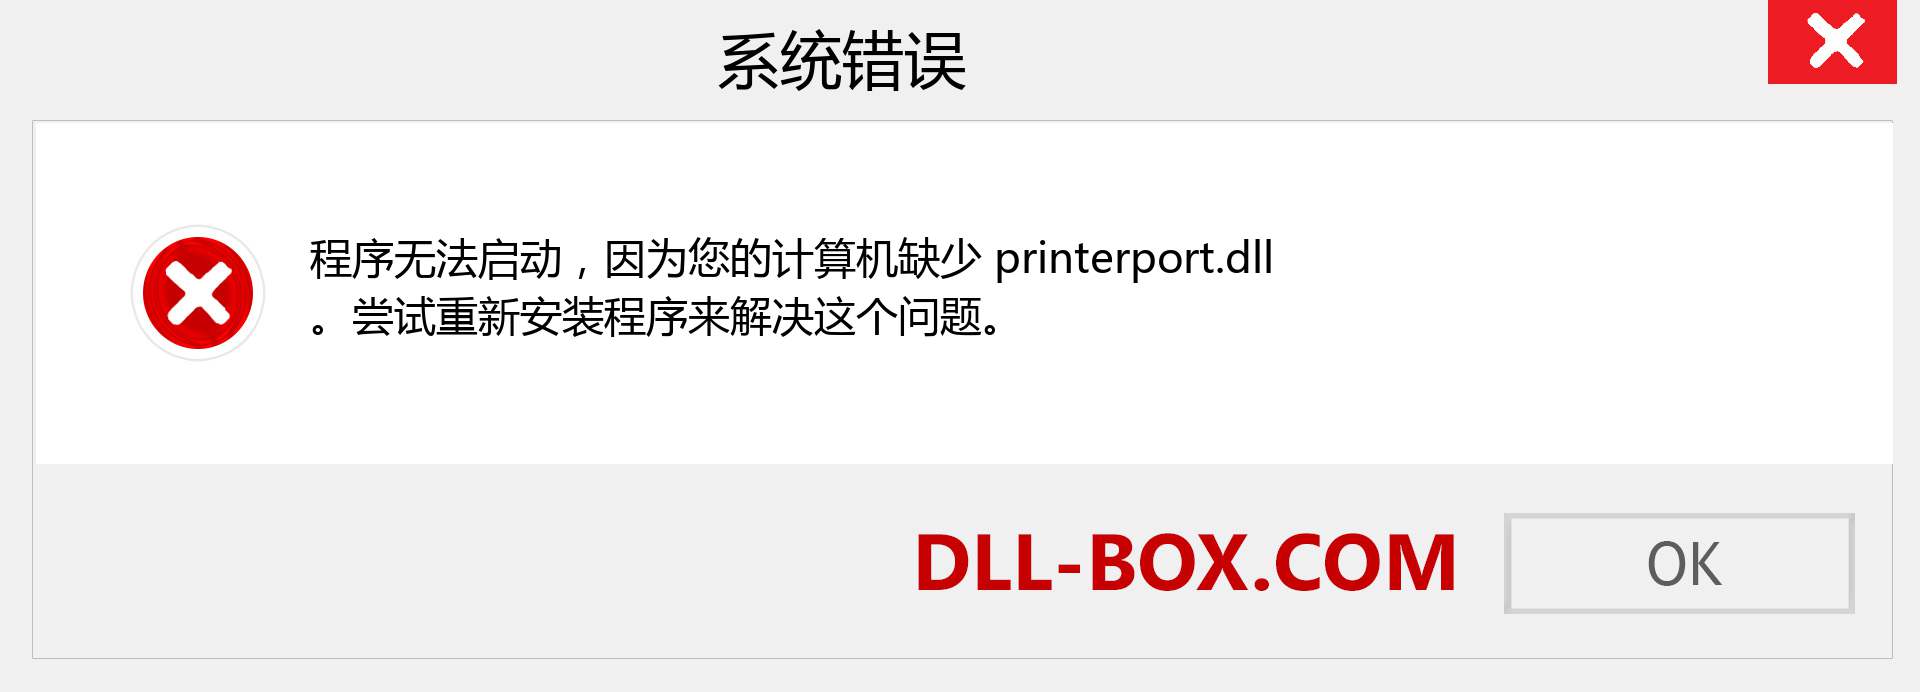 printerport.dll 文件丢失？。 适用于 Windows 7、8、10 的下载 - 修复 Windows、照片、图像上的 printerport dll 丢失错误